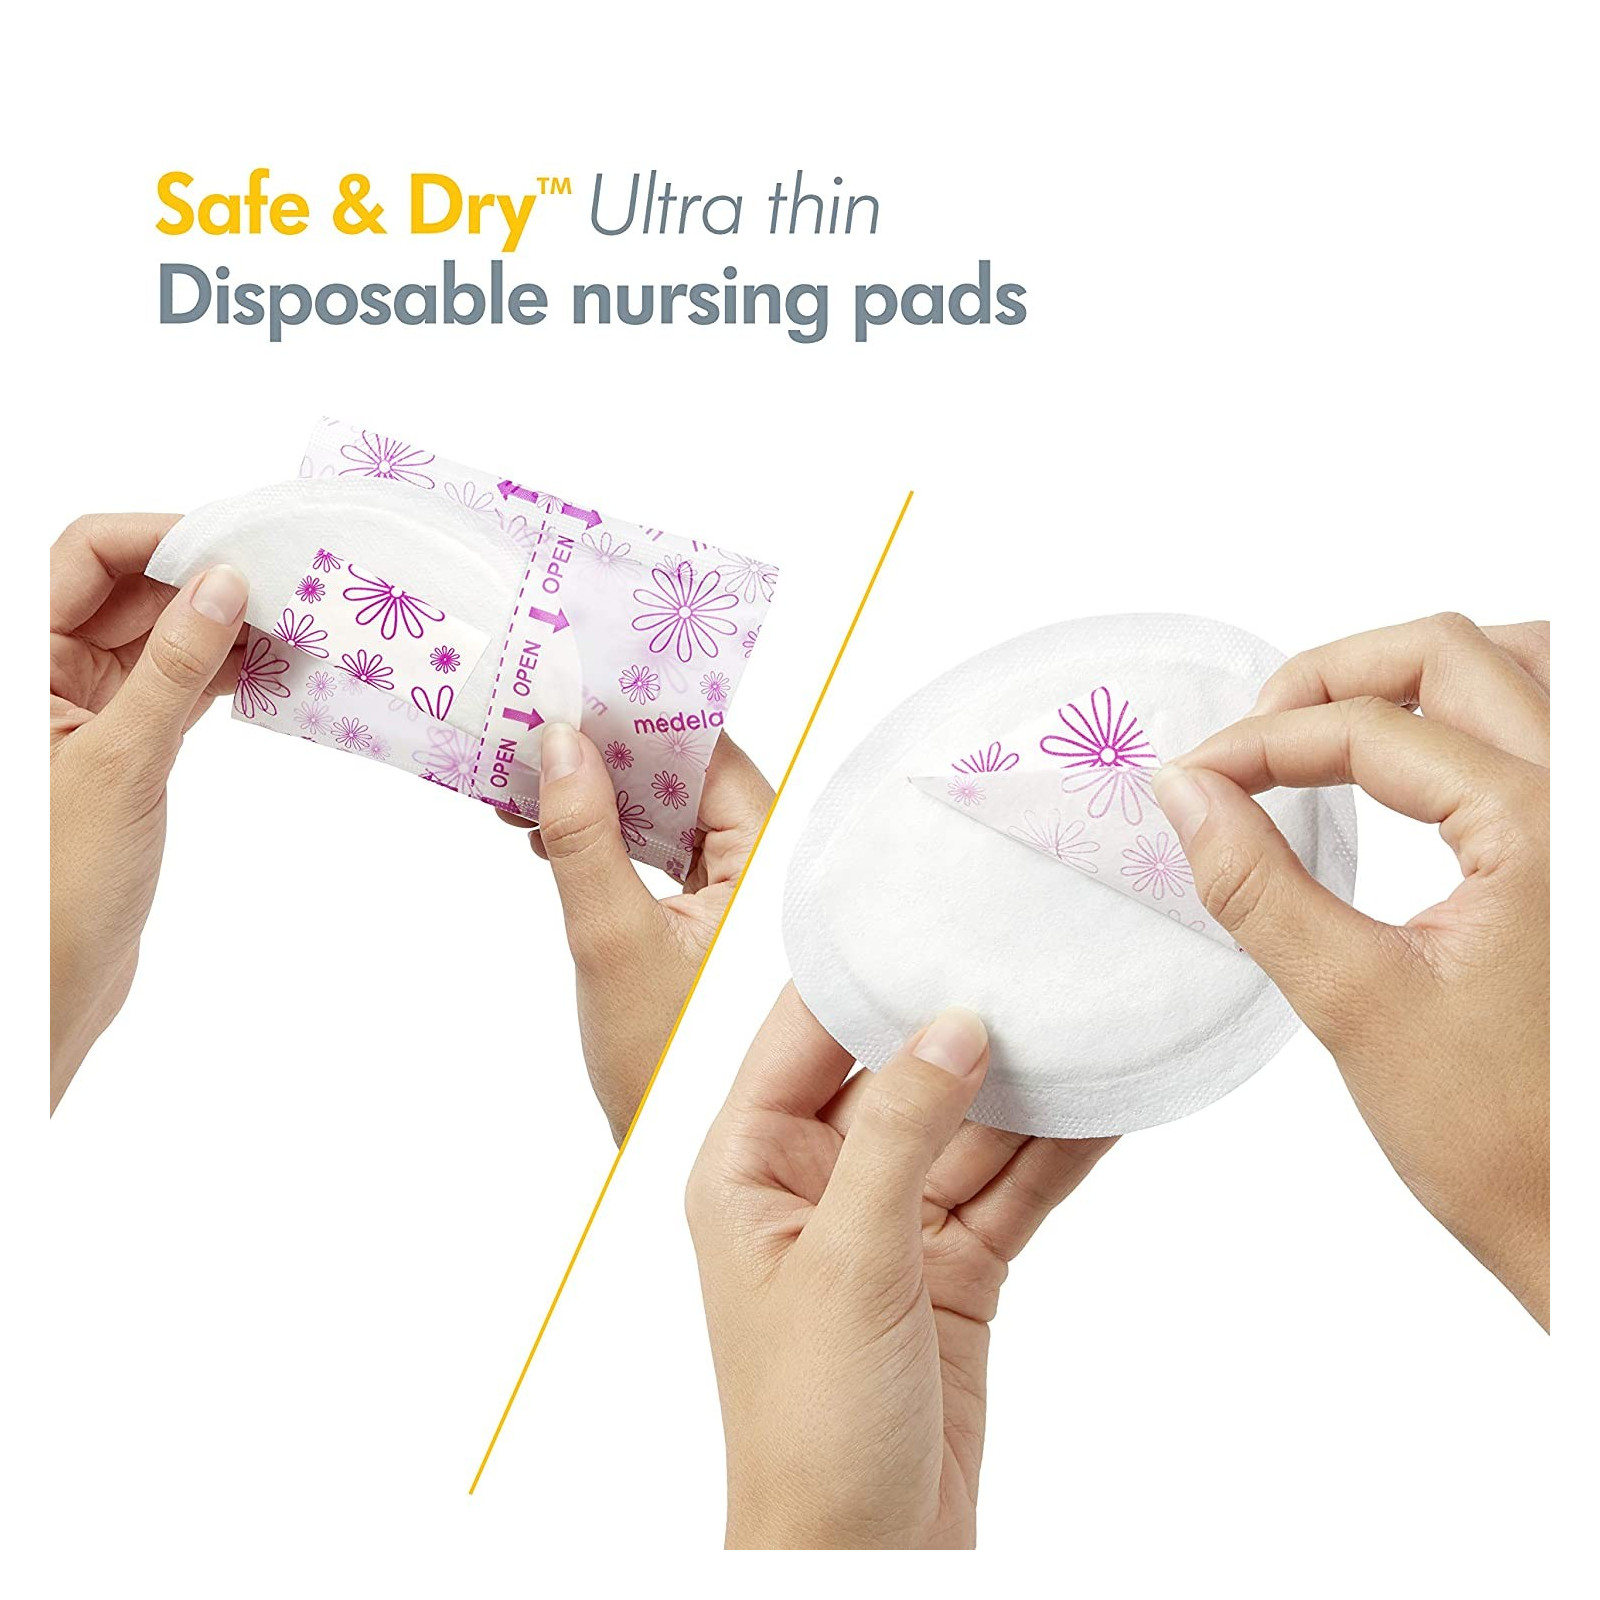 https://amedsupplies.com/1368-original/medela-disposable-nursing-pads.jpg